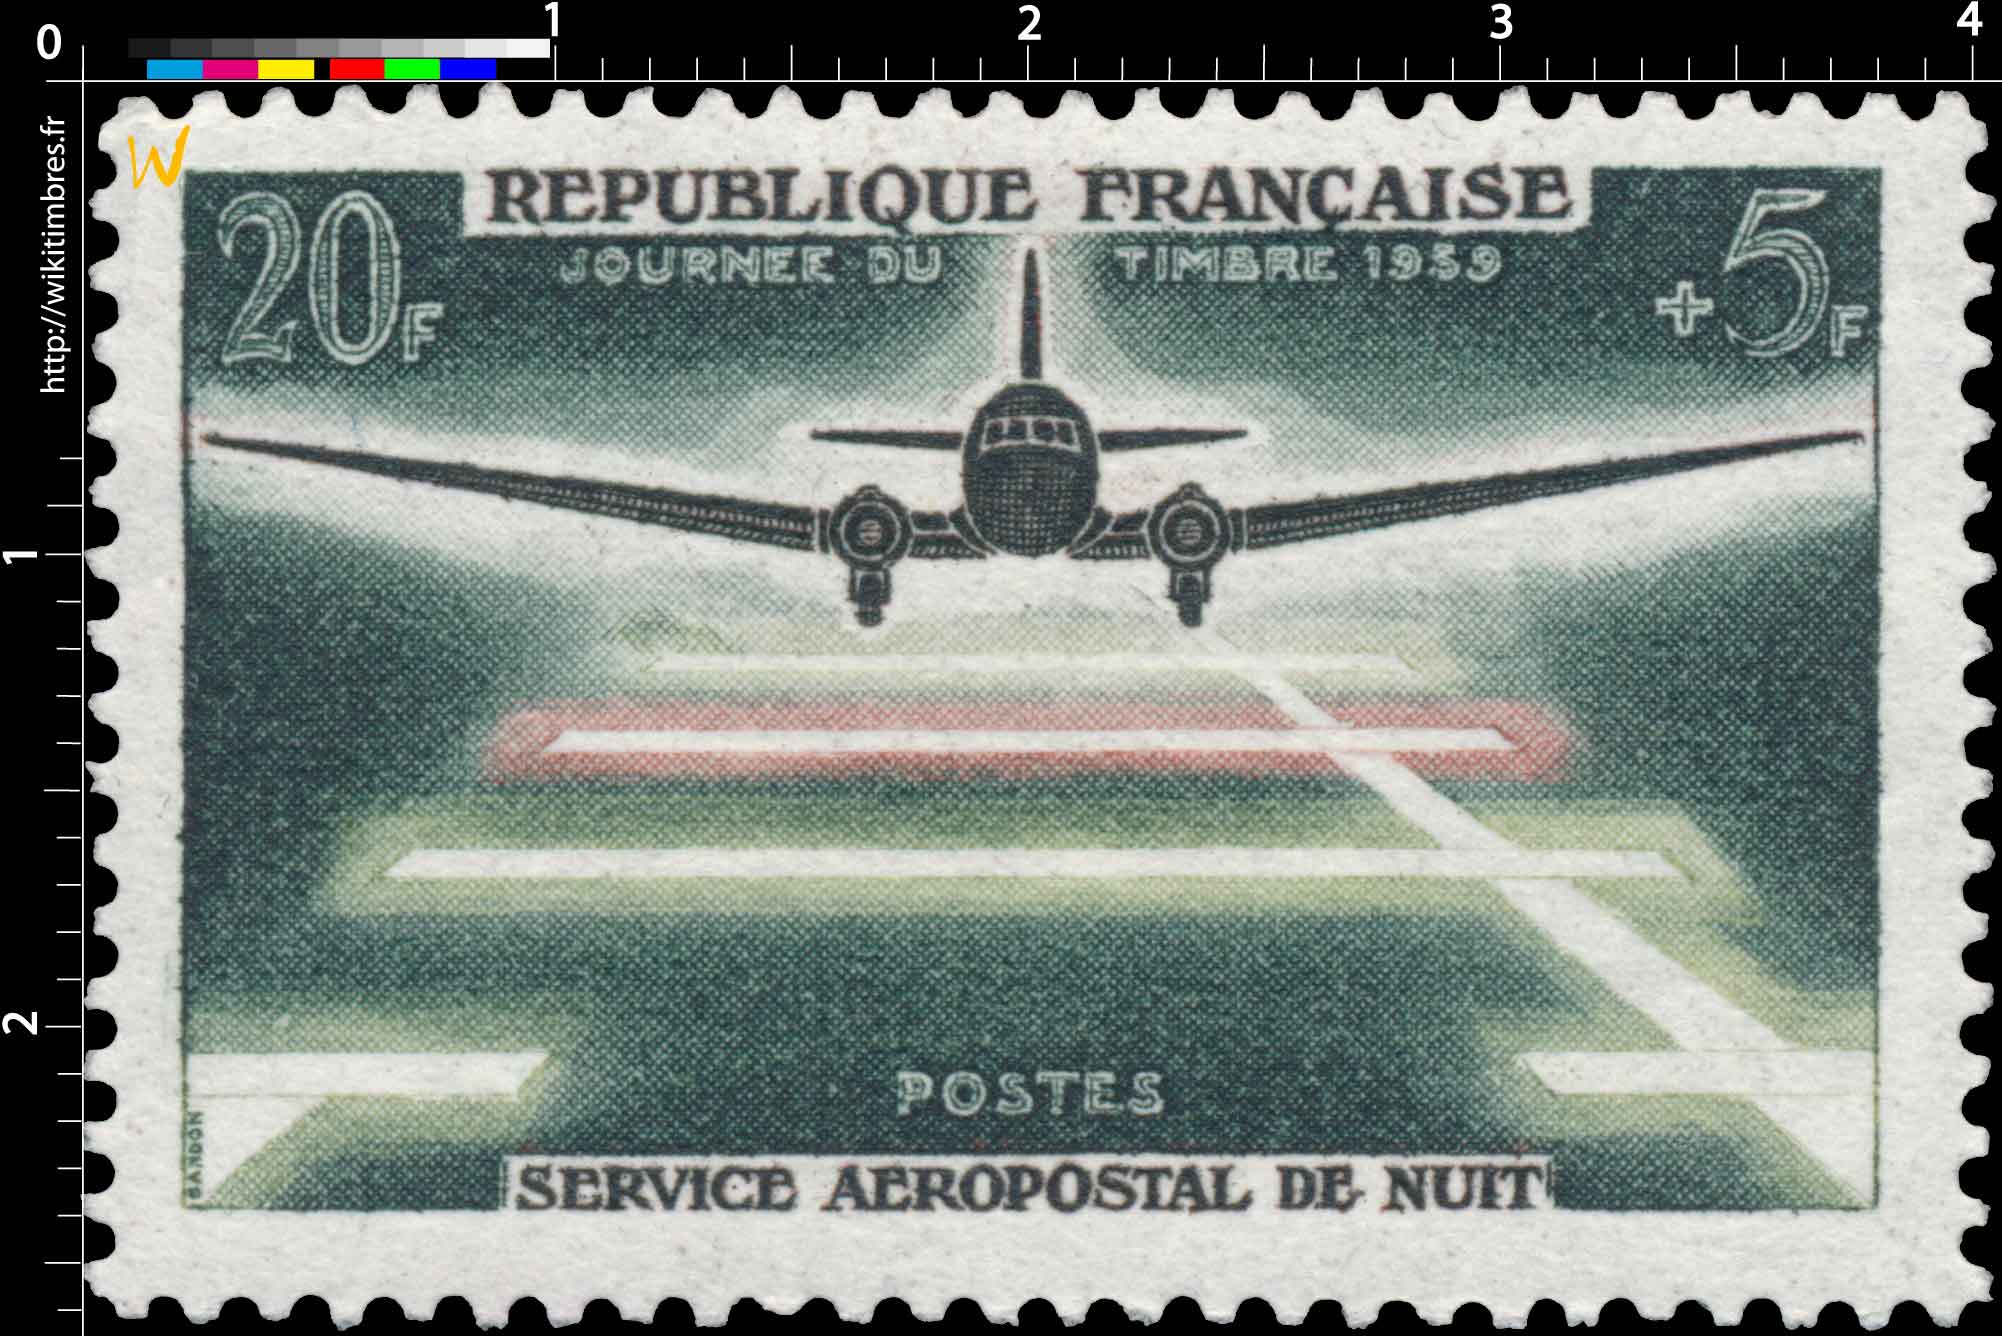 JOURNÉE DU TIMBRE 1959 SERVICE AÉROPOSTAL DE NUIT